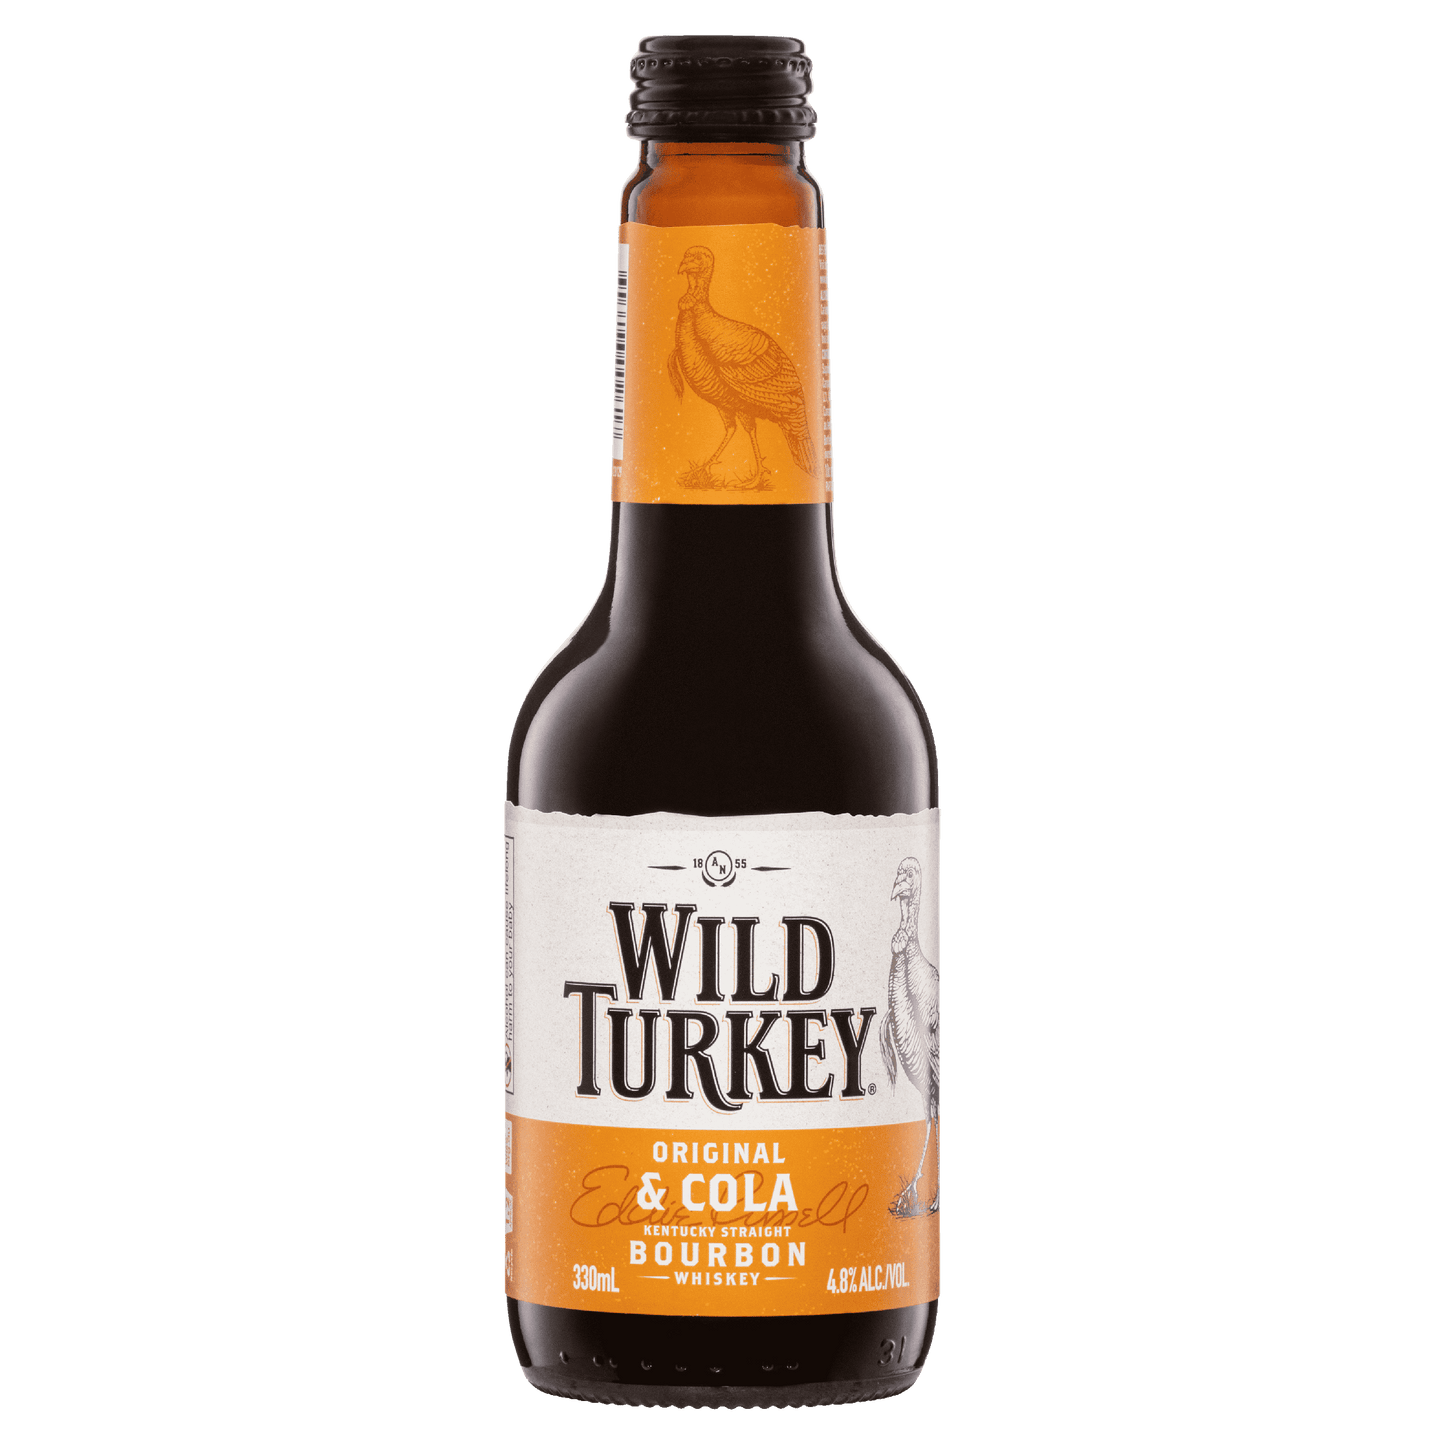 Wild Turkey & Cola 4.8% Bottle 330ml